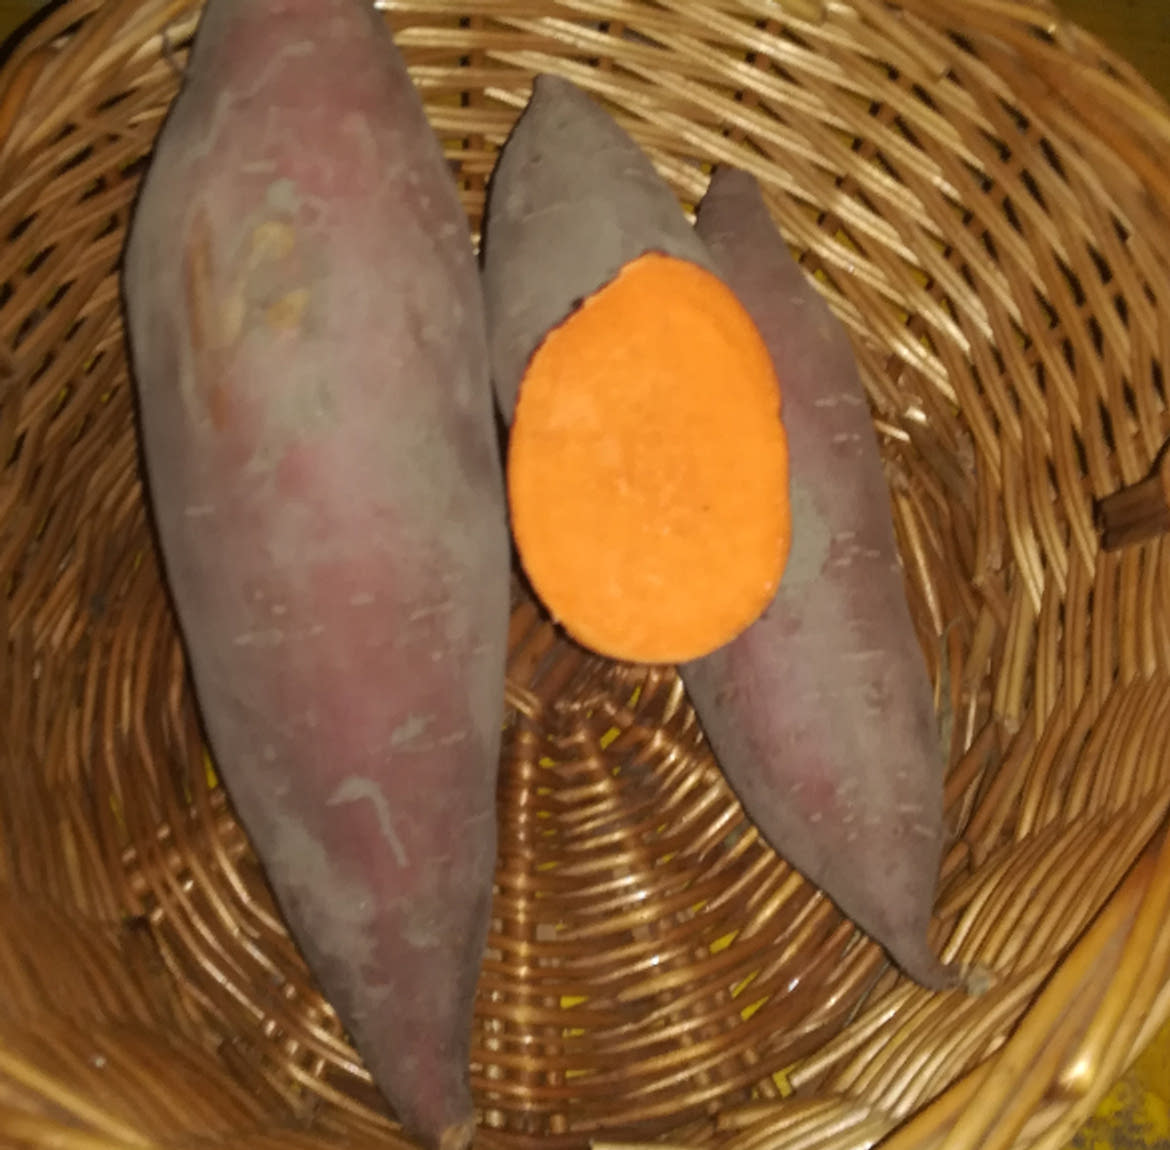 Vegyszermentes lilás héjú narancssárga húsú batáta / Bíbor, édes